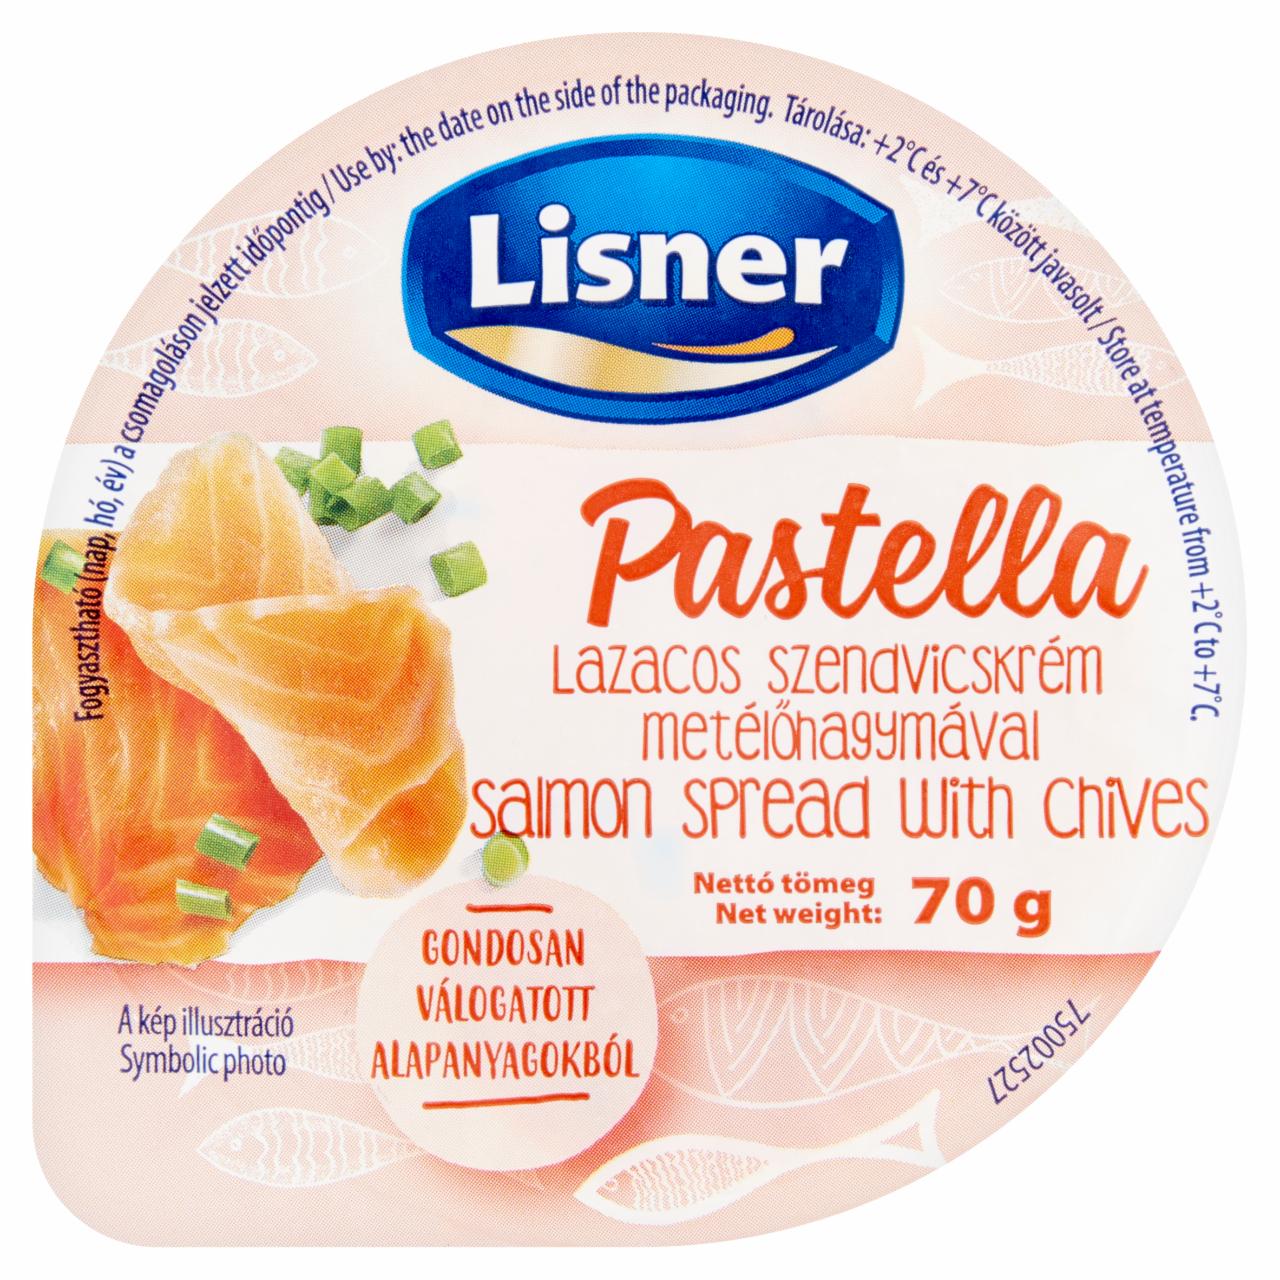 Képek - Lisner Pastella lazacos szendvicskrém metélőhagymával 70 g